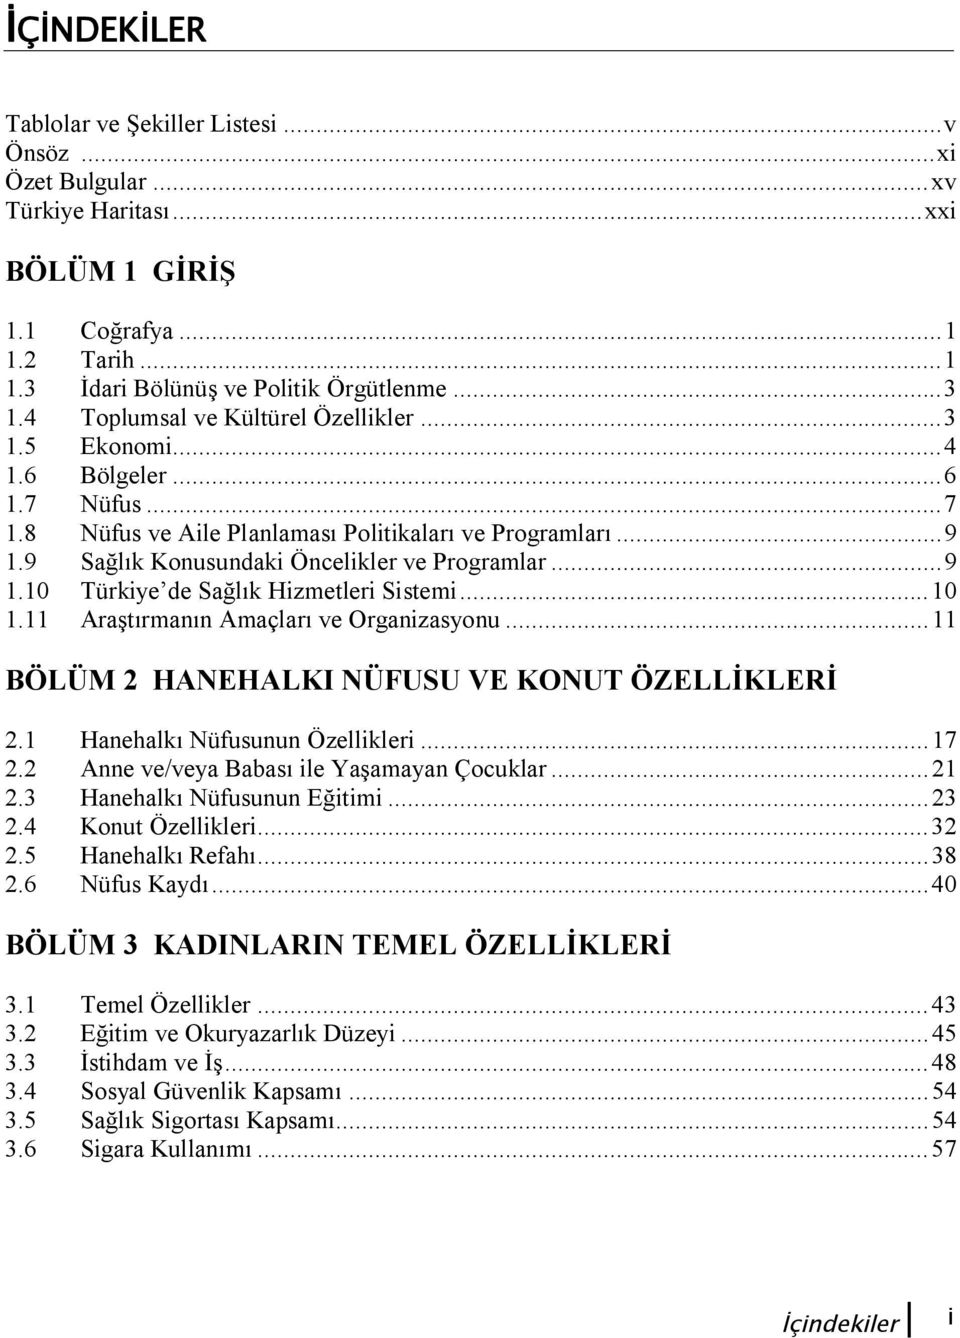 .. 9 1.10 Türkiye de Sağlık Hizmetleri Sistemi... 10 1.11 Araştırmanın Amaçları ve Organizasyonu... 11 BÖLÜM 2 HANEHALKI NÜFUSU VE KONUT ÖZELLİKLERİ 2.1 Hanehalkı Nüfusunun Özellikleri... 17 2.